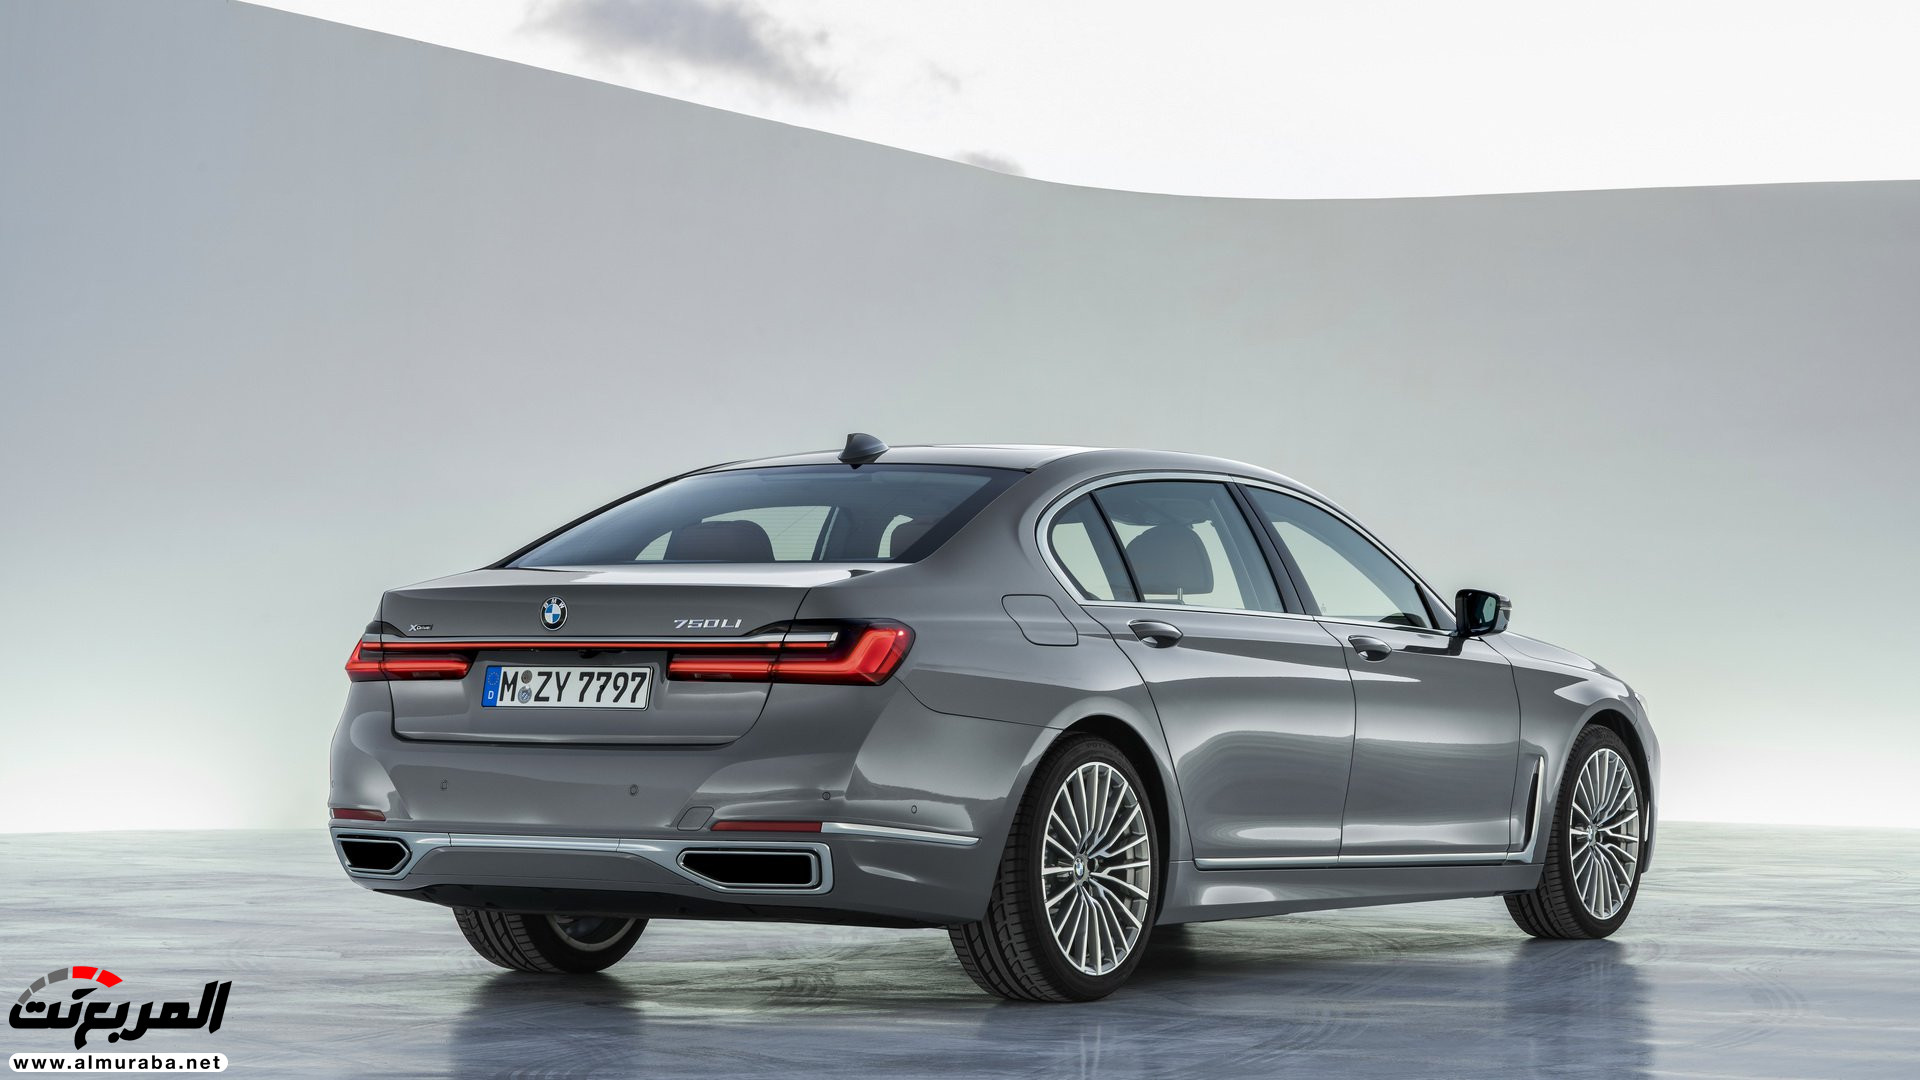 بي ام دبليو الفئة السابعة 2020 المحدثة تكشف نفسها رسمياً "صور ومواصفات" BMW 7 Series 279